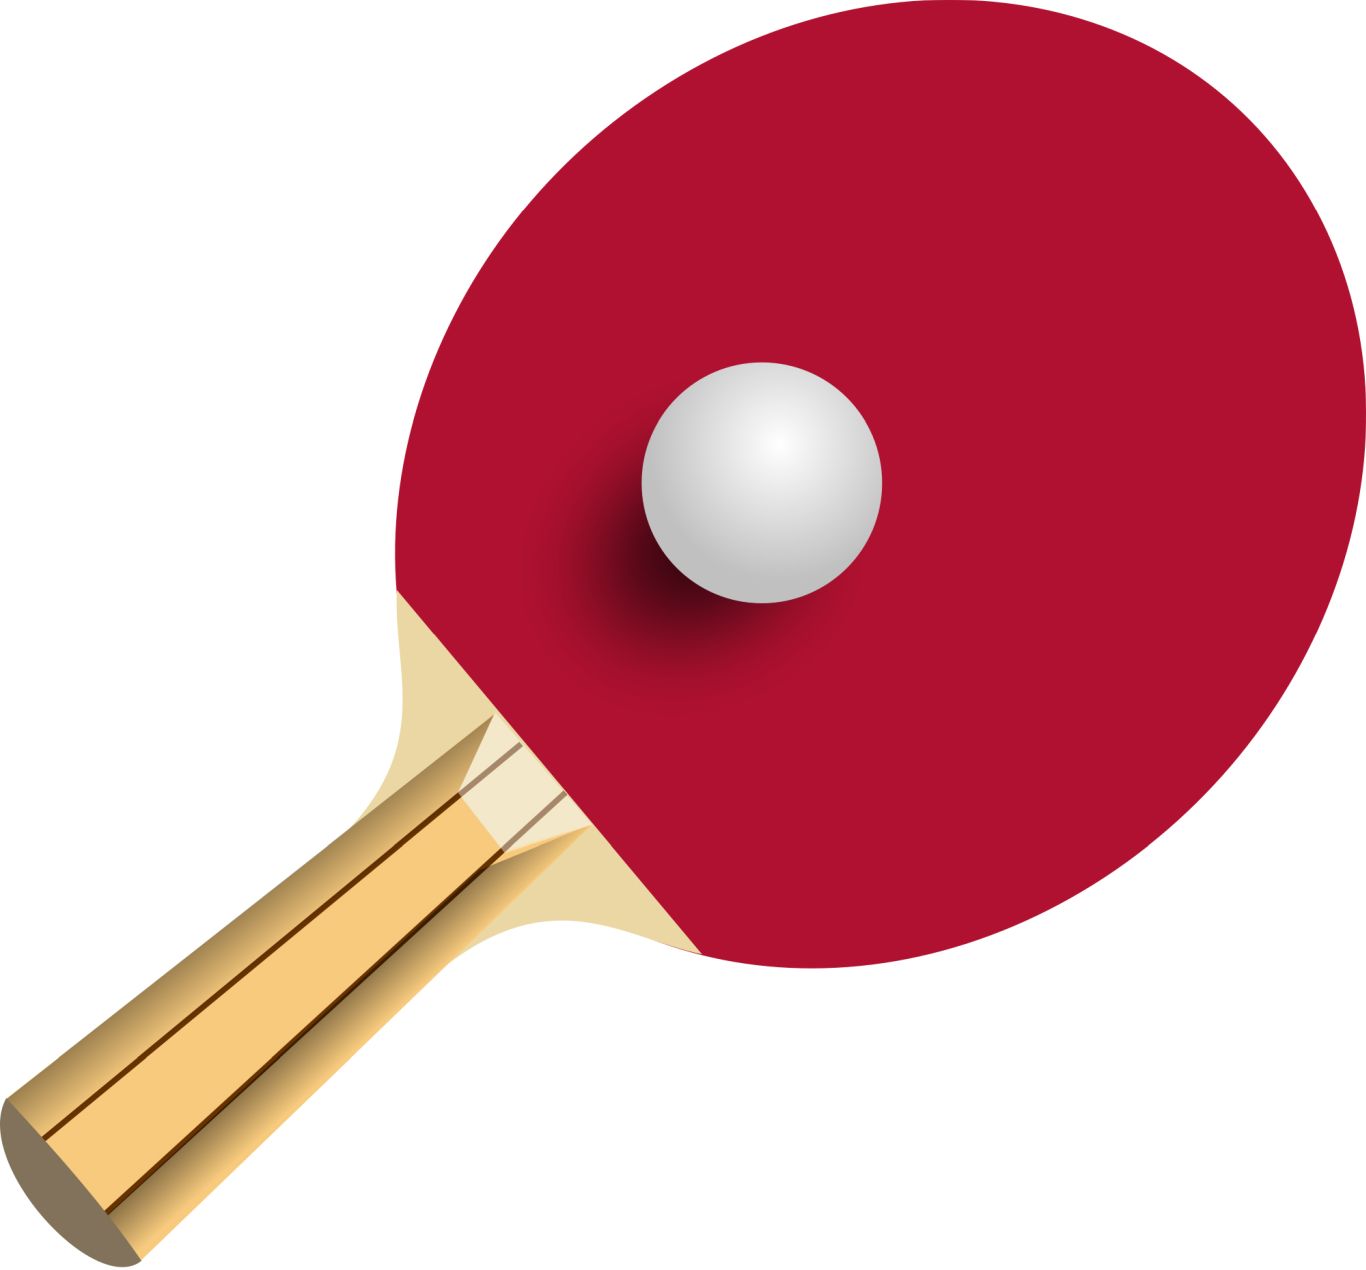 Ping Pong racket PNG image    图片编号:10361